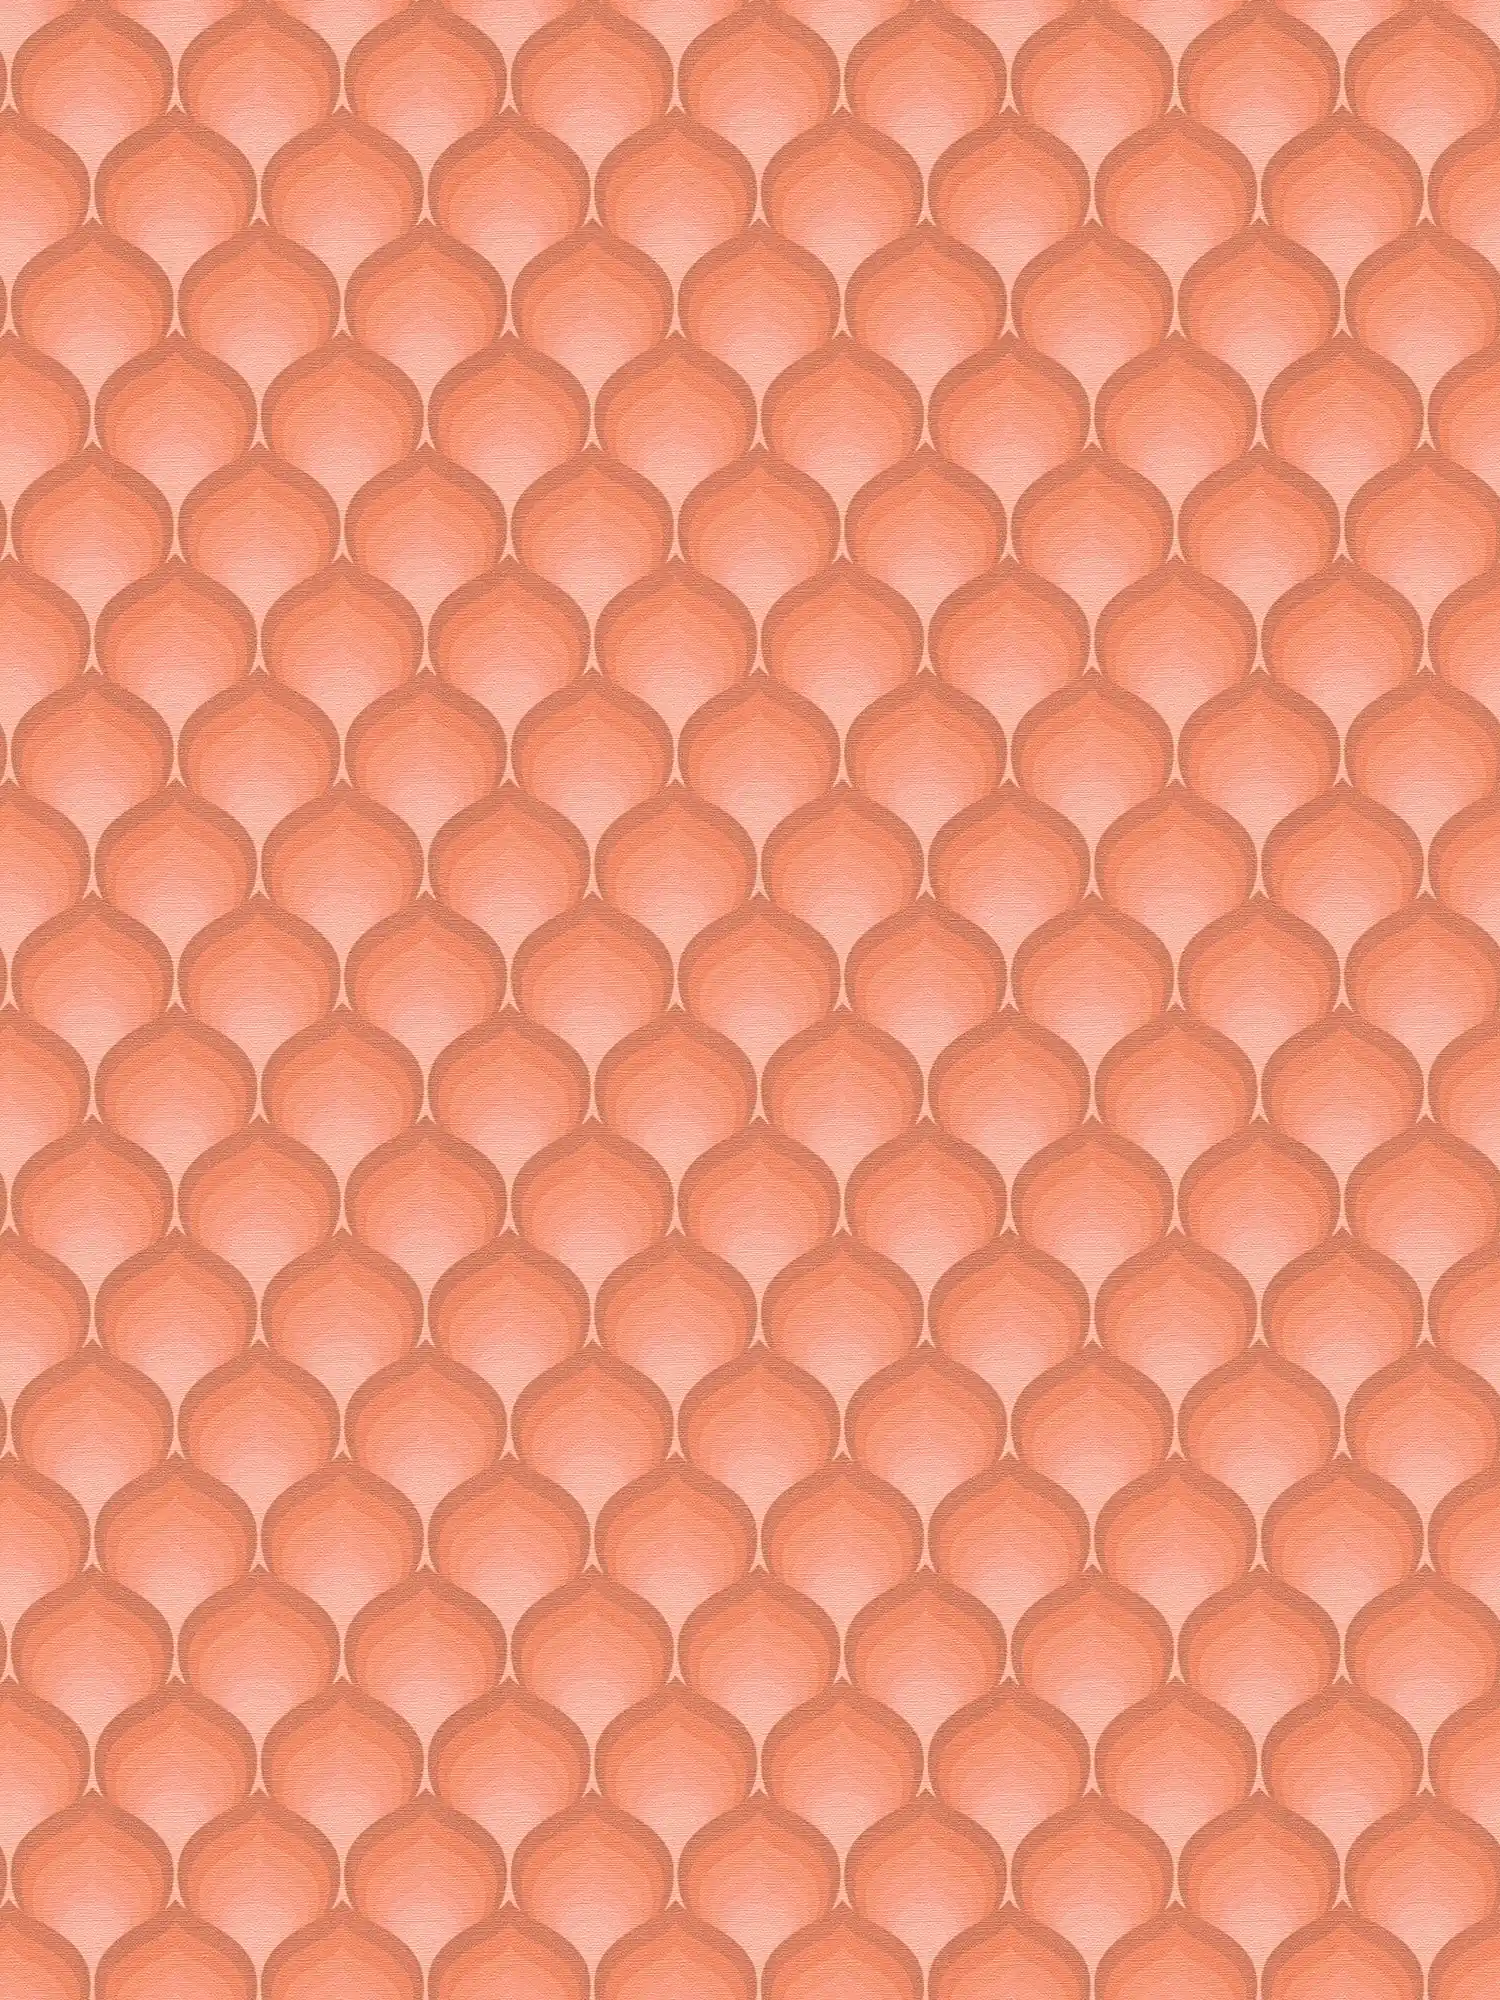 Retro vliesbehang met schubbenpatroon in warme kleuren - oranje, rood, roze
